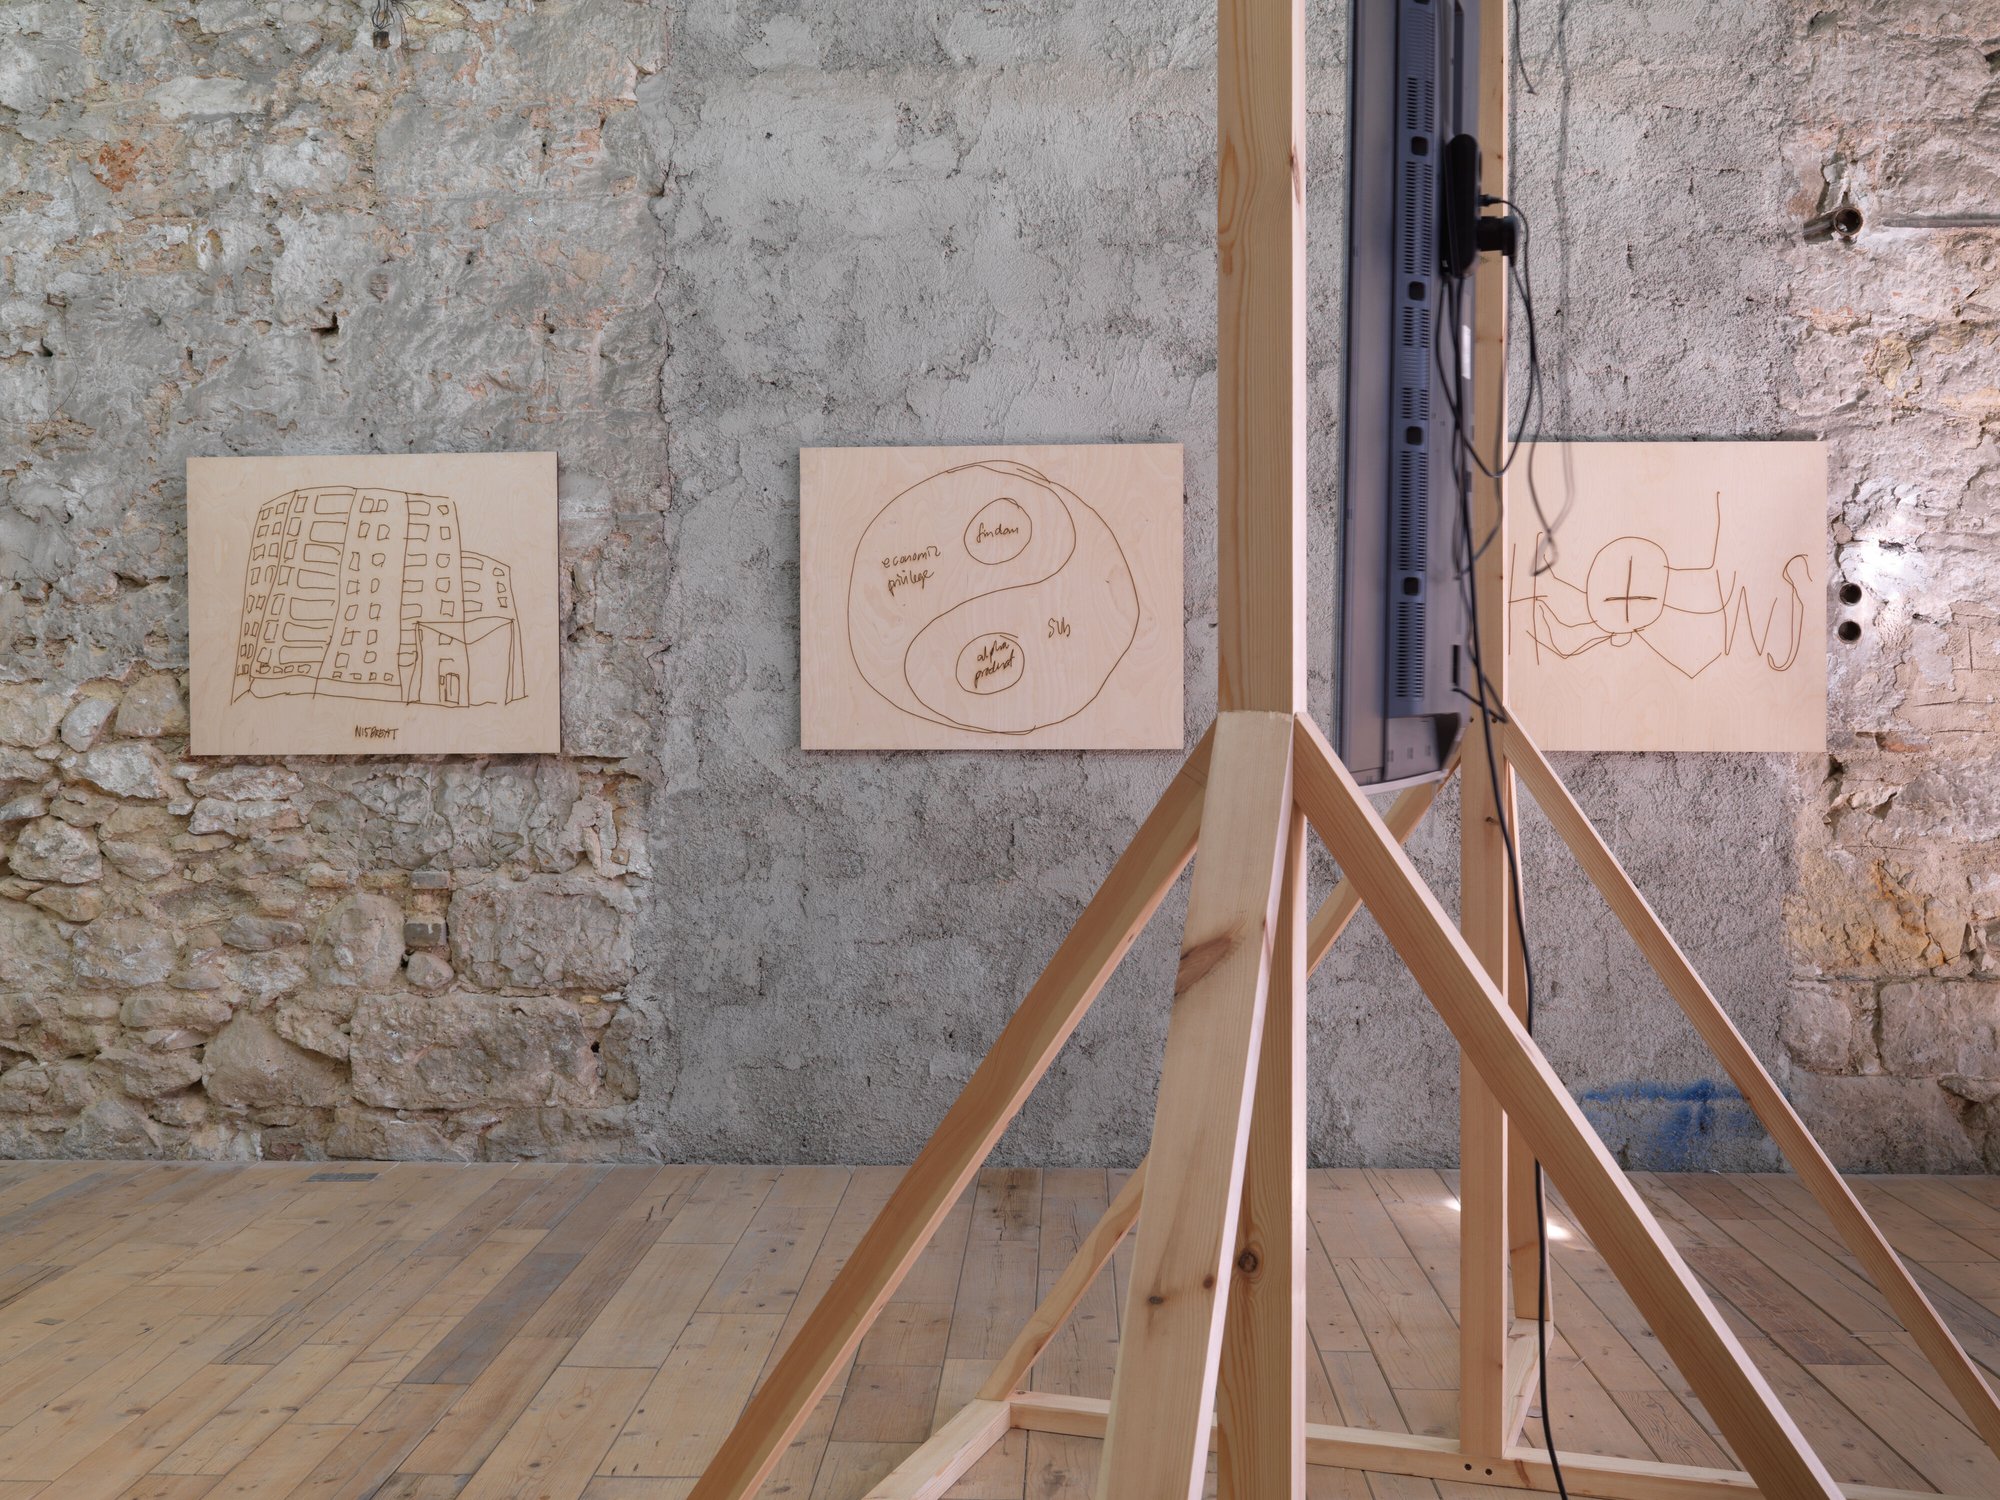 Installation view, Sidsel Meineche Hansen, home vs owner, Rodeo, Piraeus, 2020